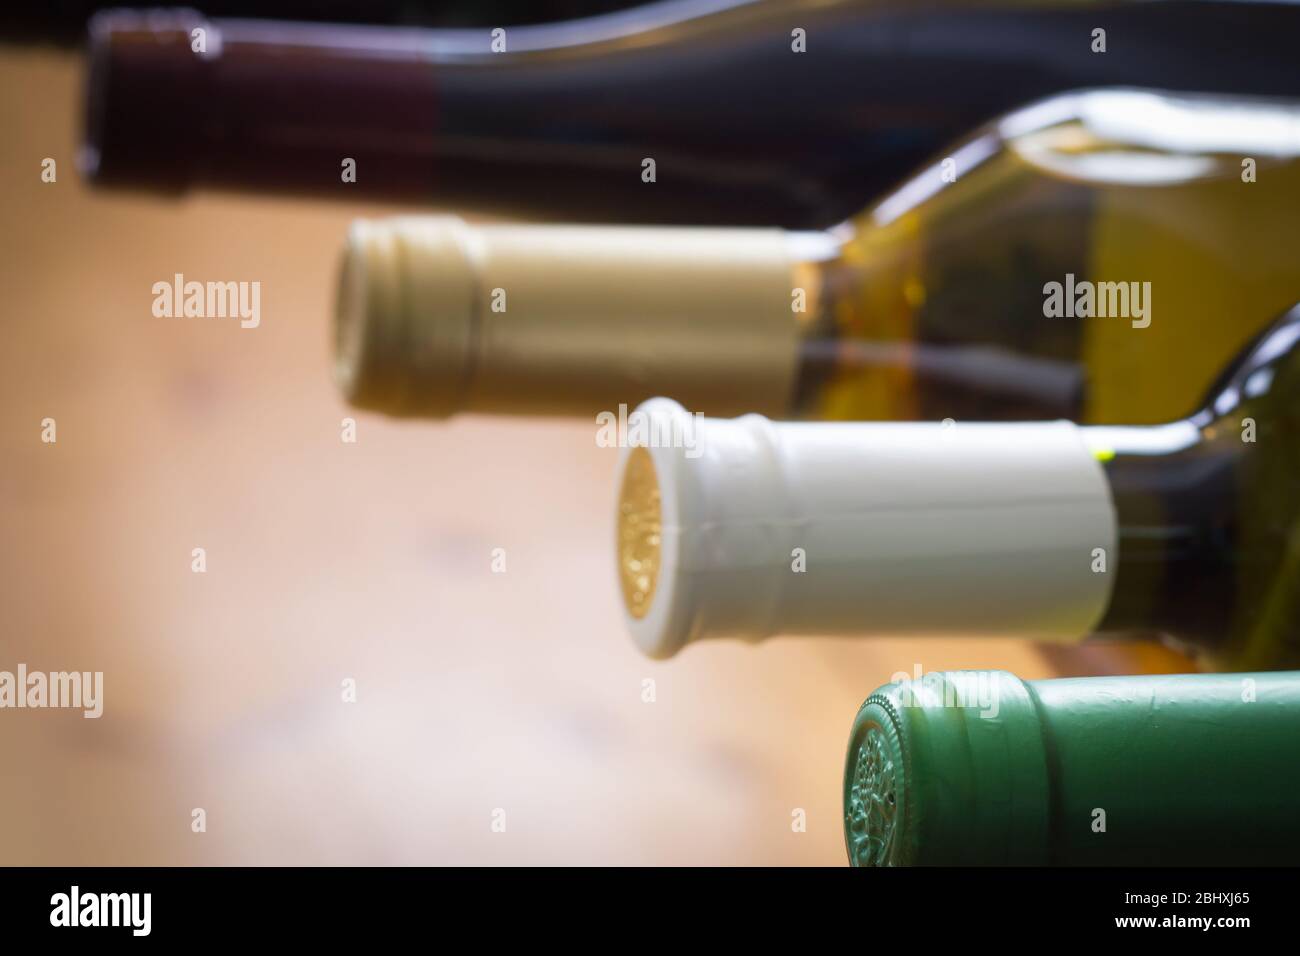 Bottiglie di vino impilate su scaffali di legno sparate con profondità di campo limitata, concetto di alcol Foto Stock